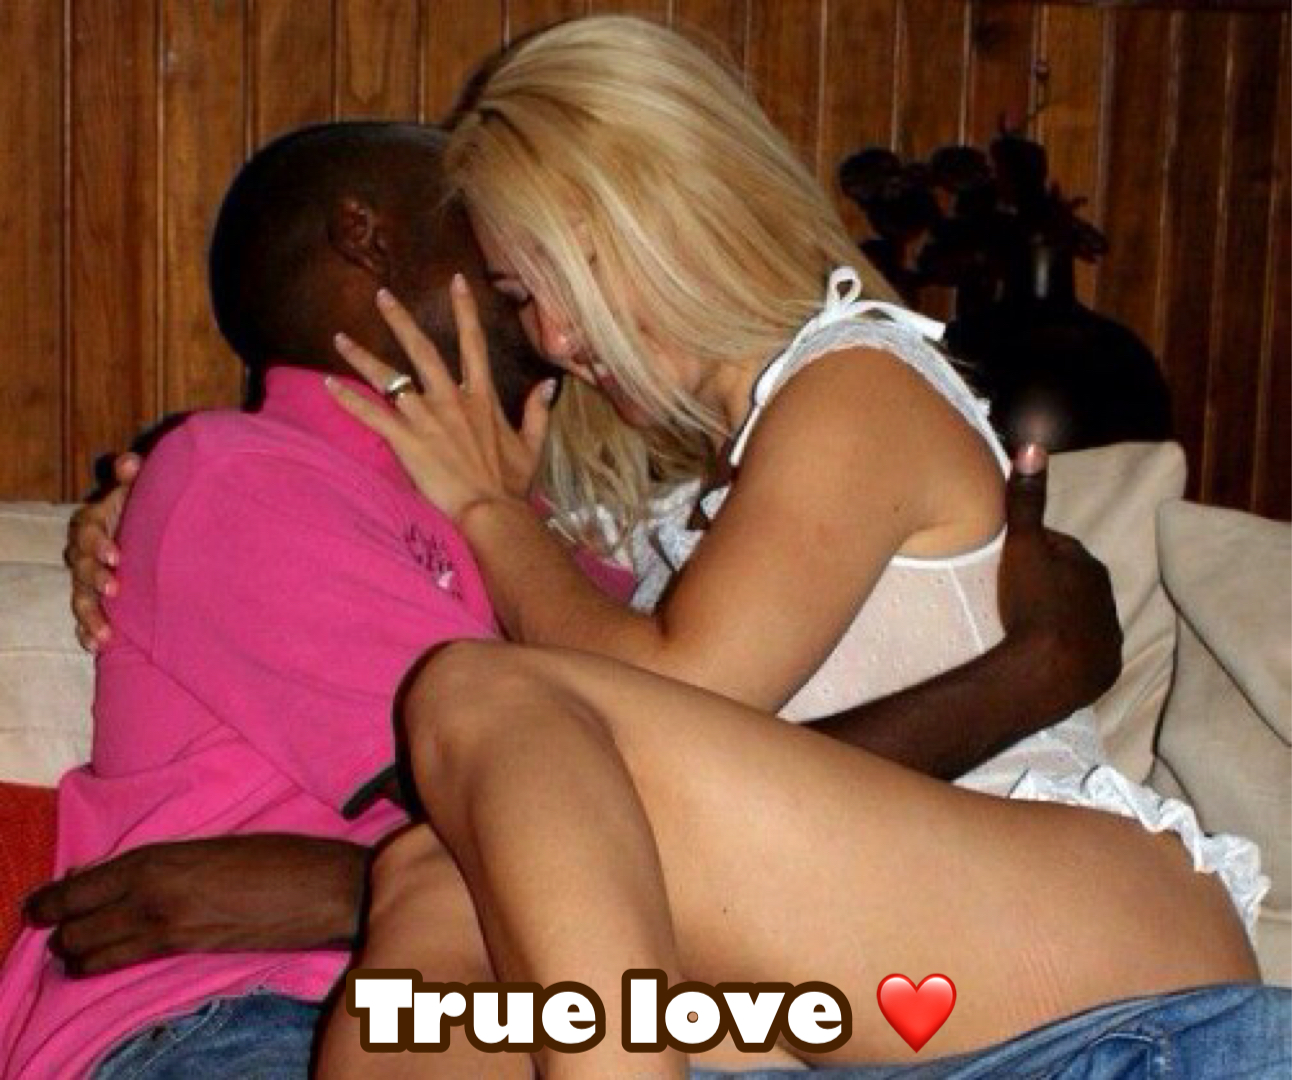 True love …